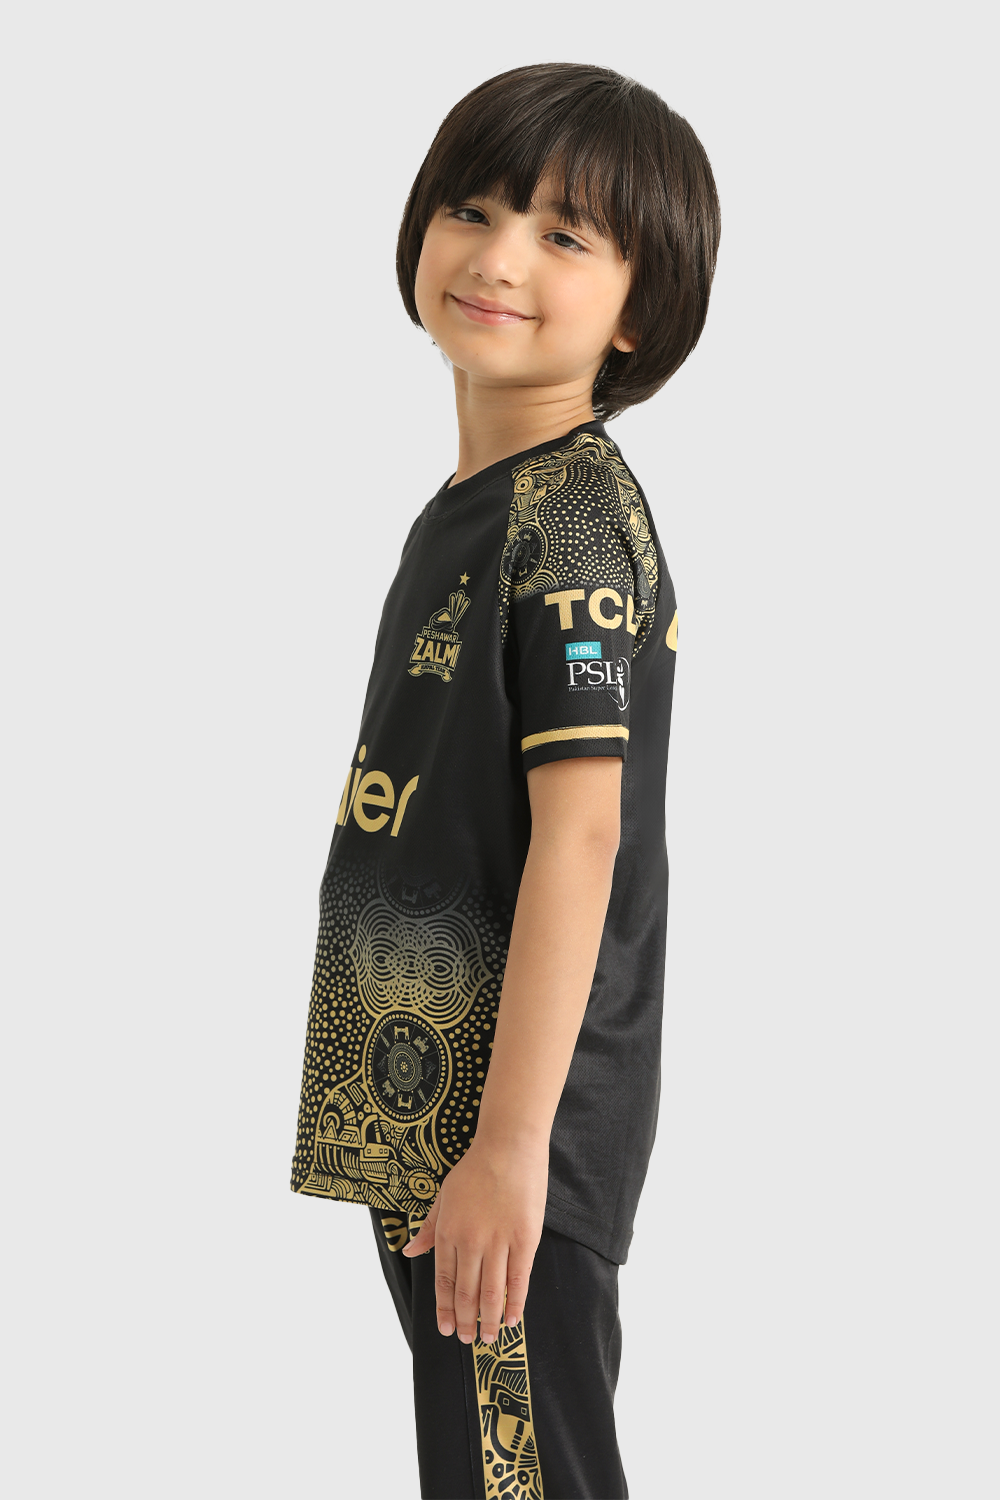 Peshawar Zalmi PSL 9 Juniors Away Kit (Shirt and Trouser)